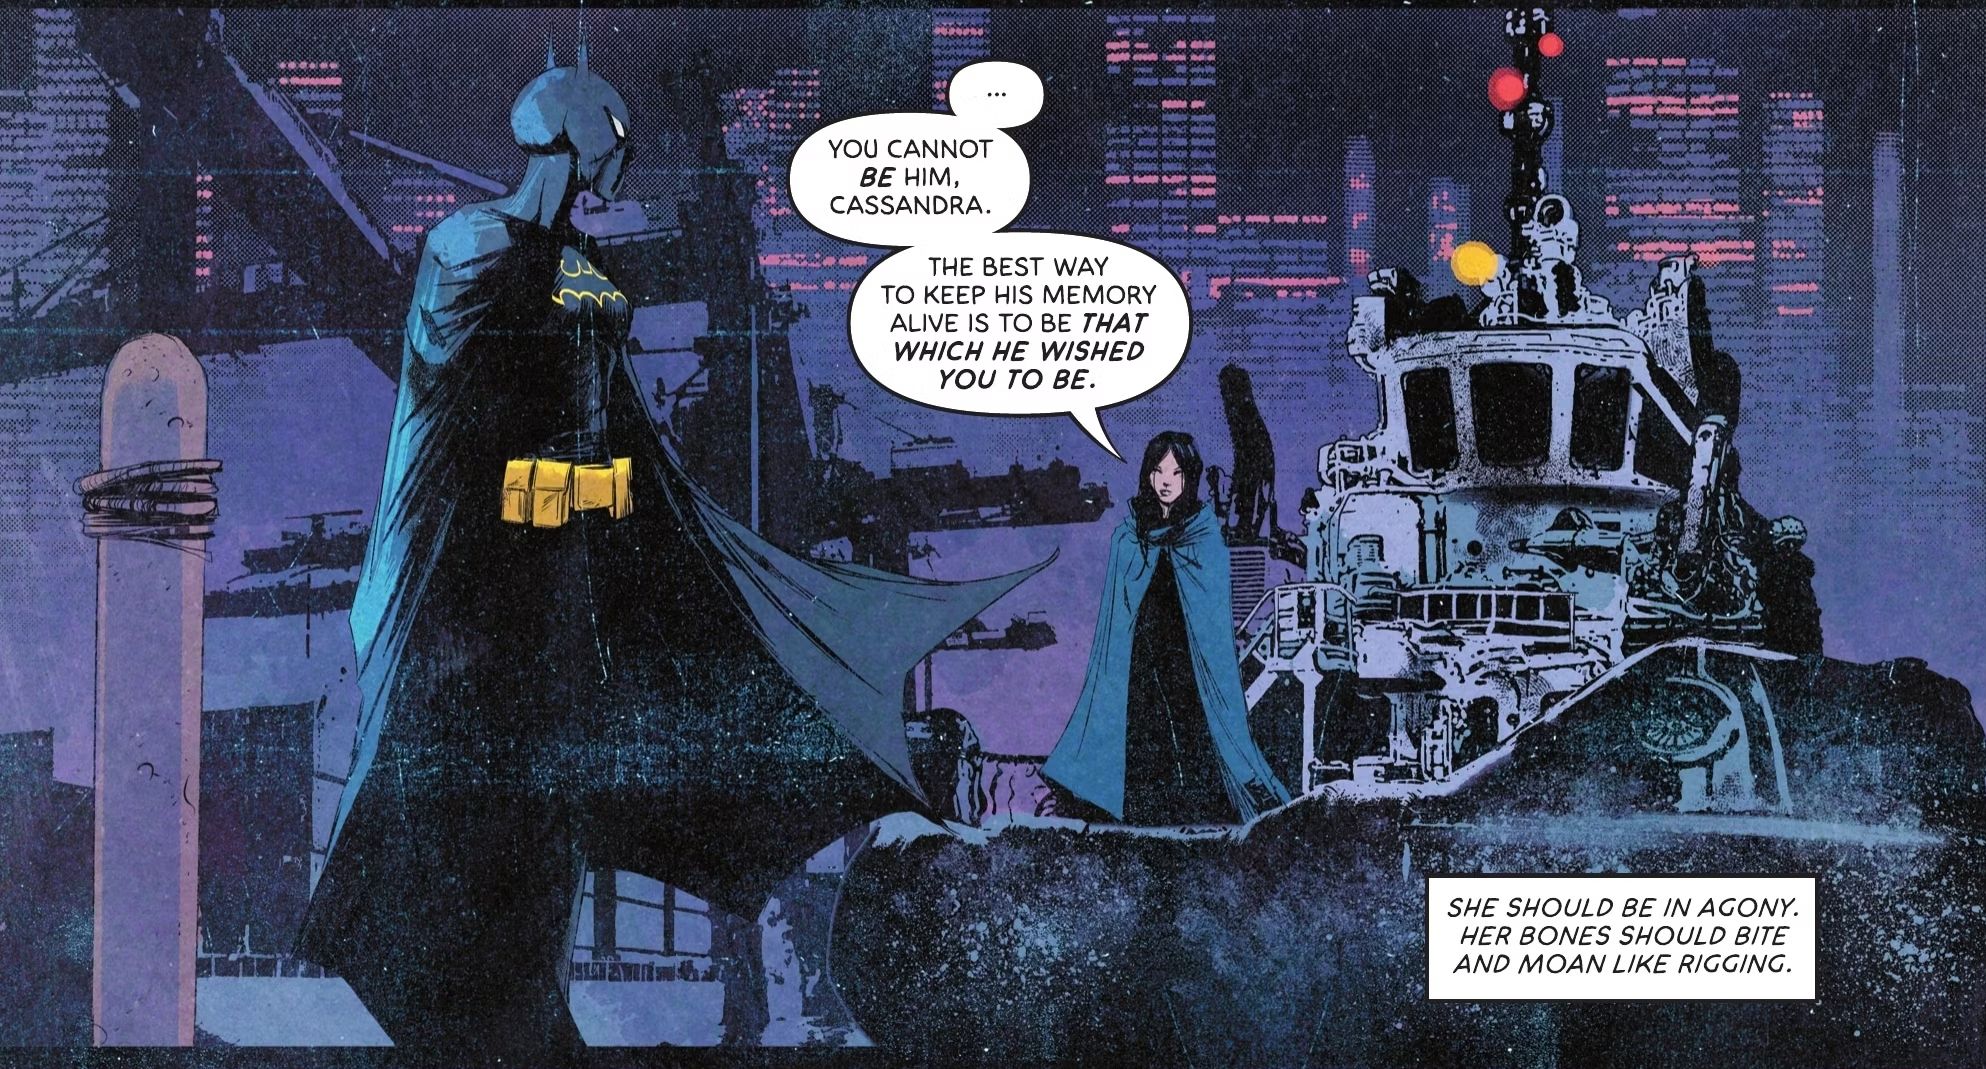 Lady Shiva diz a Batgirl que ela não pode ser o Batman, mas ela pode "seja aquilo que ele desejava que ela fosse."